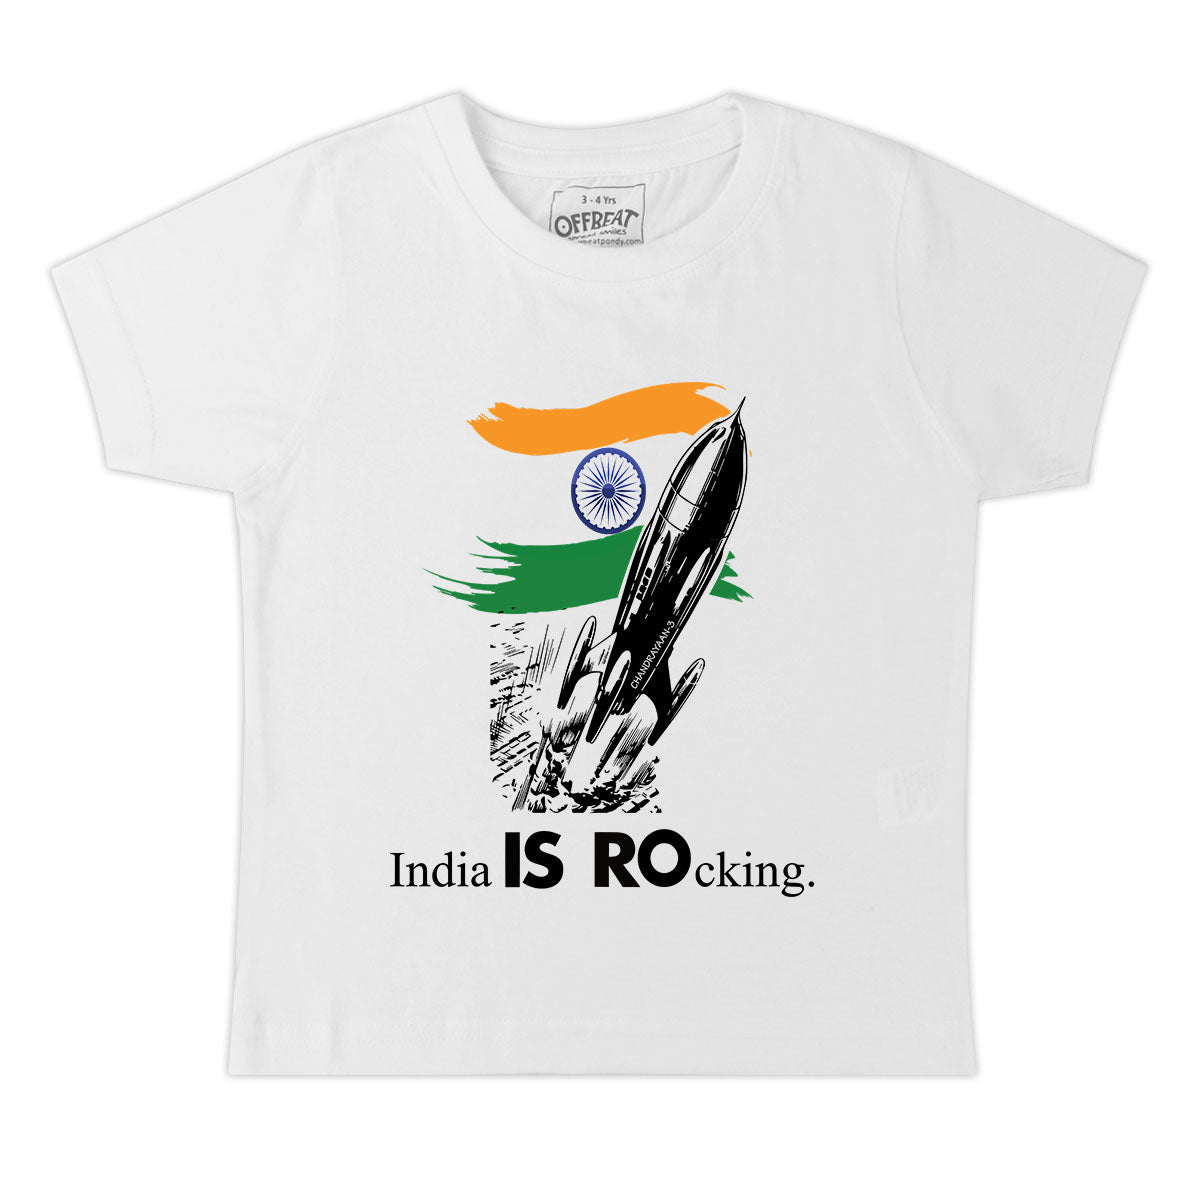 India Is Rocking - Premium Round Neck Cotton Tees for Kids - White